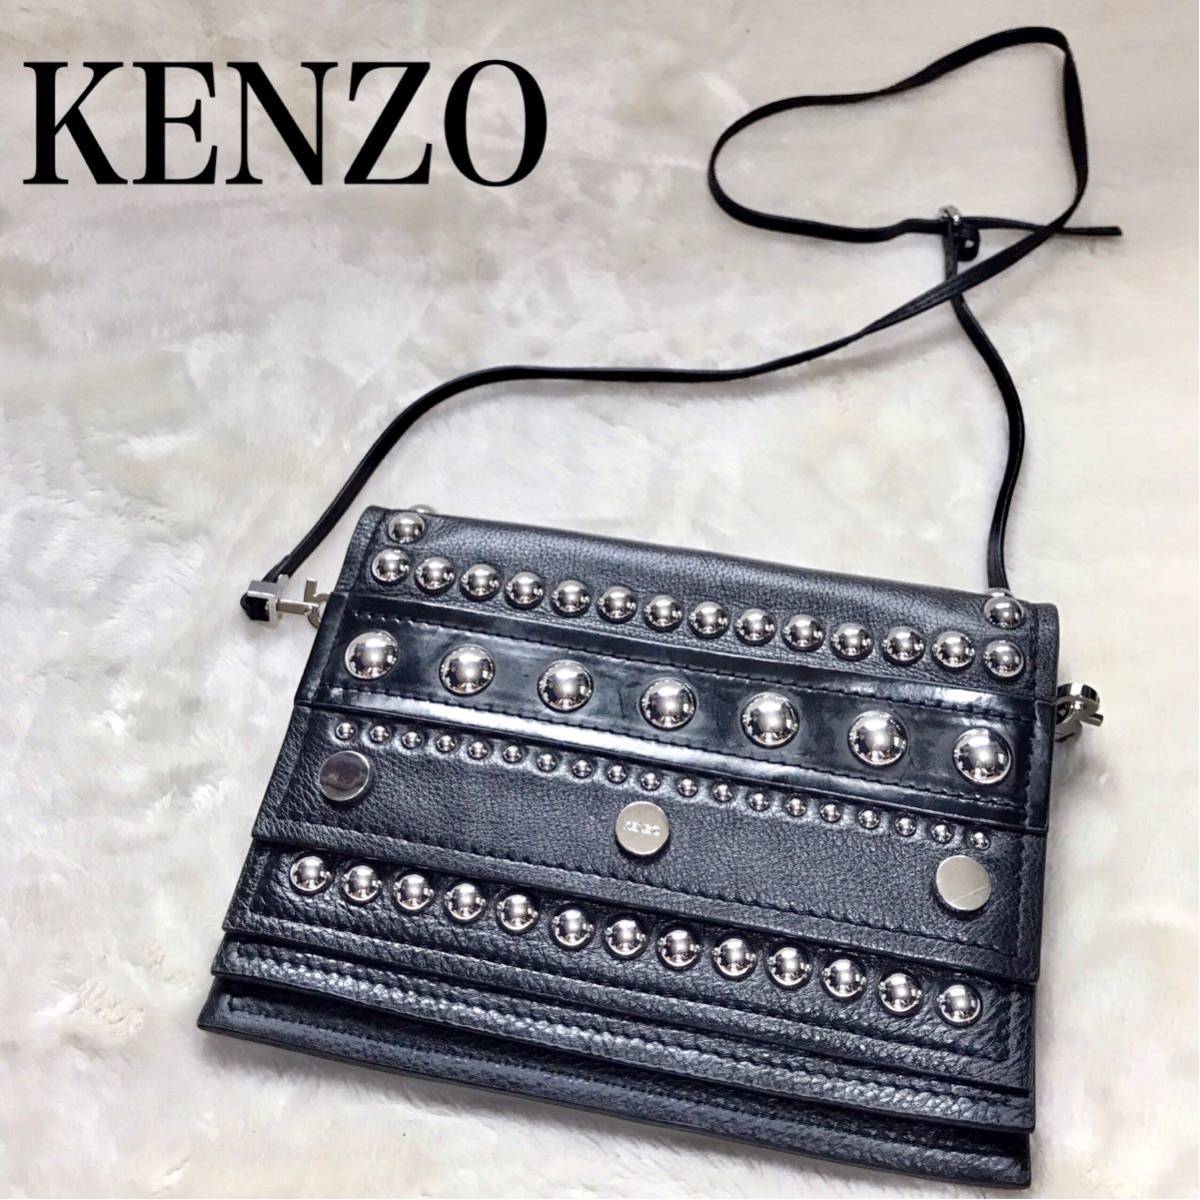 美品 KENZO 2way ショルダーバッグ クラッチバッグ レザー スタッズ ケンゾー オールレザー ブラック 黒